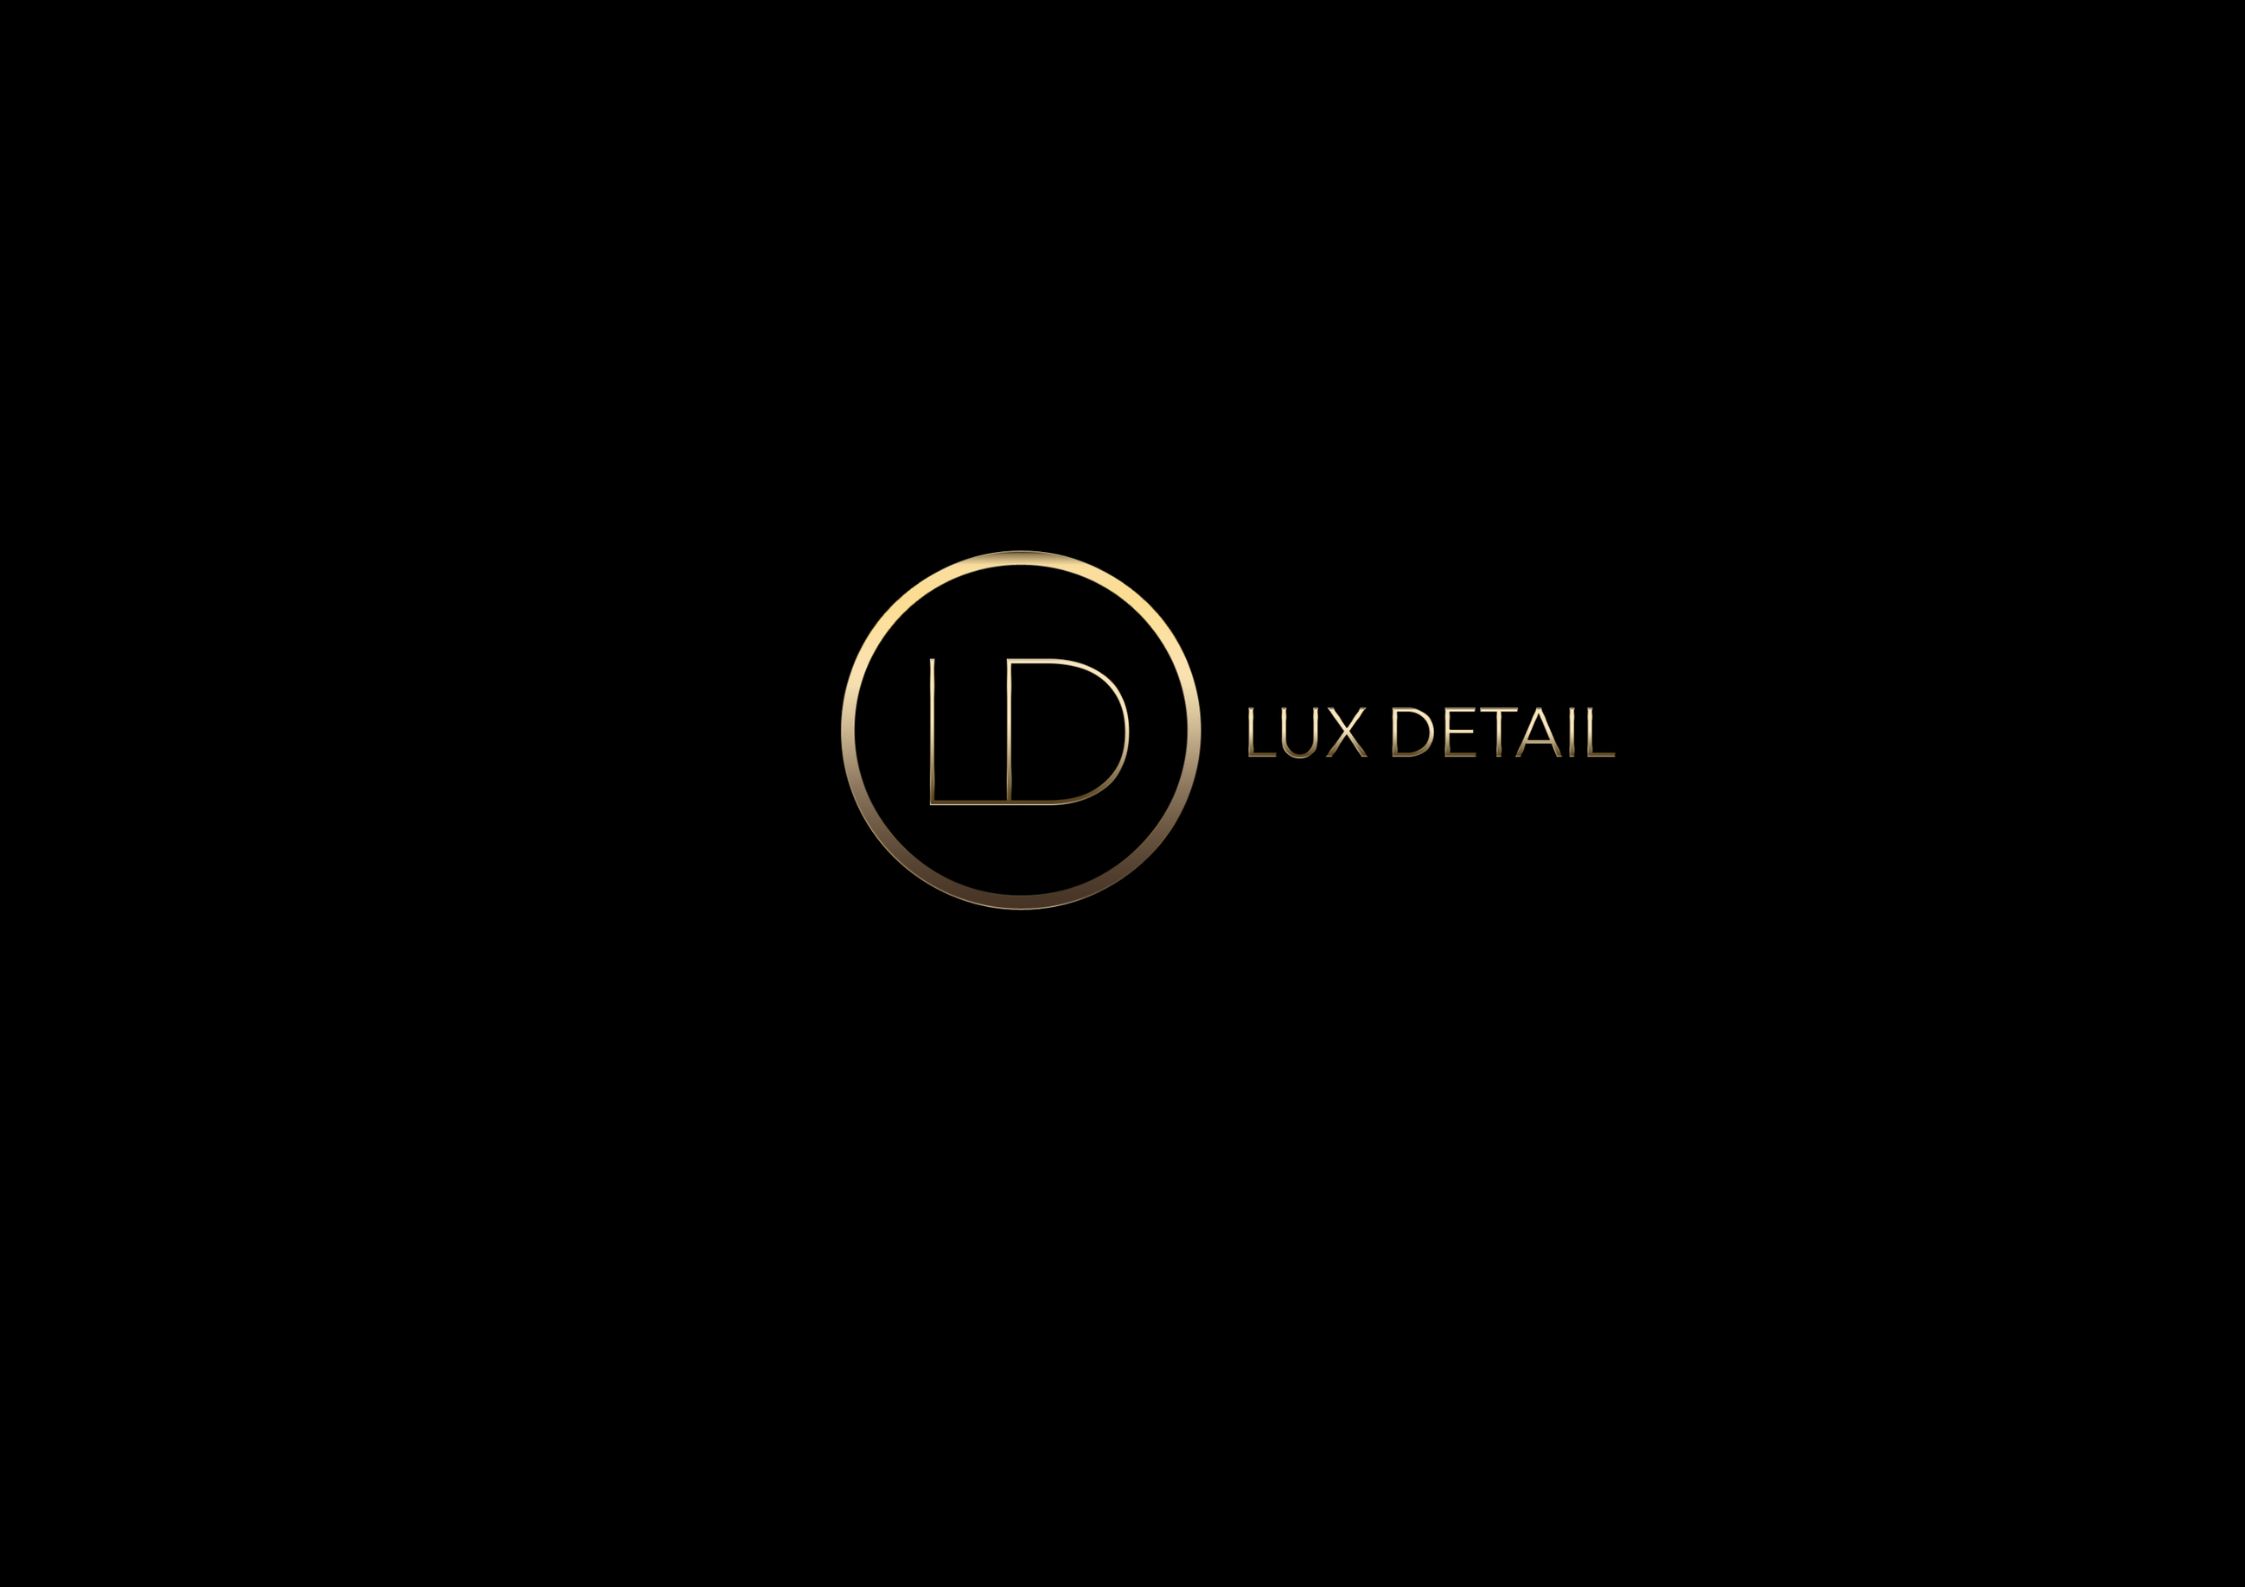 Lux Details